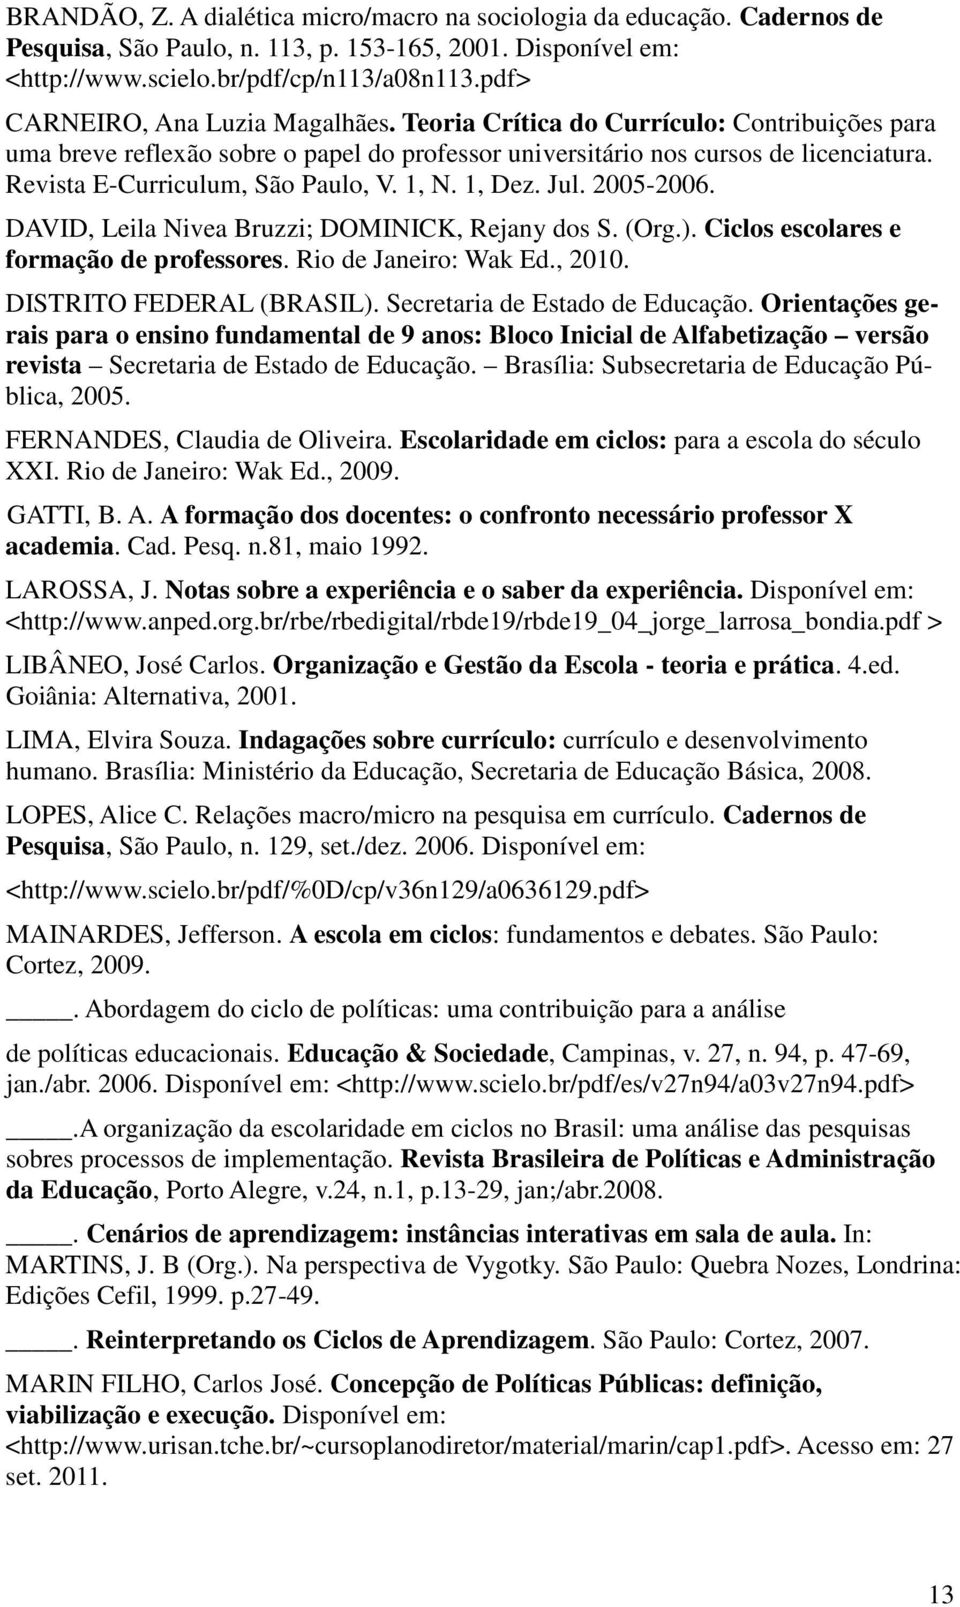 Revista E-Curriculum, São Paulo, V. 1, N. 1, Dez. Jul. 2005-2006. DAVID, Leila Nivea Bruzzi; DOMINICK, Rejany dos S. (Org.). Ciclos escolares e formação de professores. Rio de Janeiro: Wak Ed., 2010.